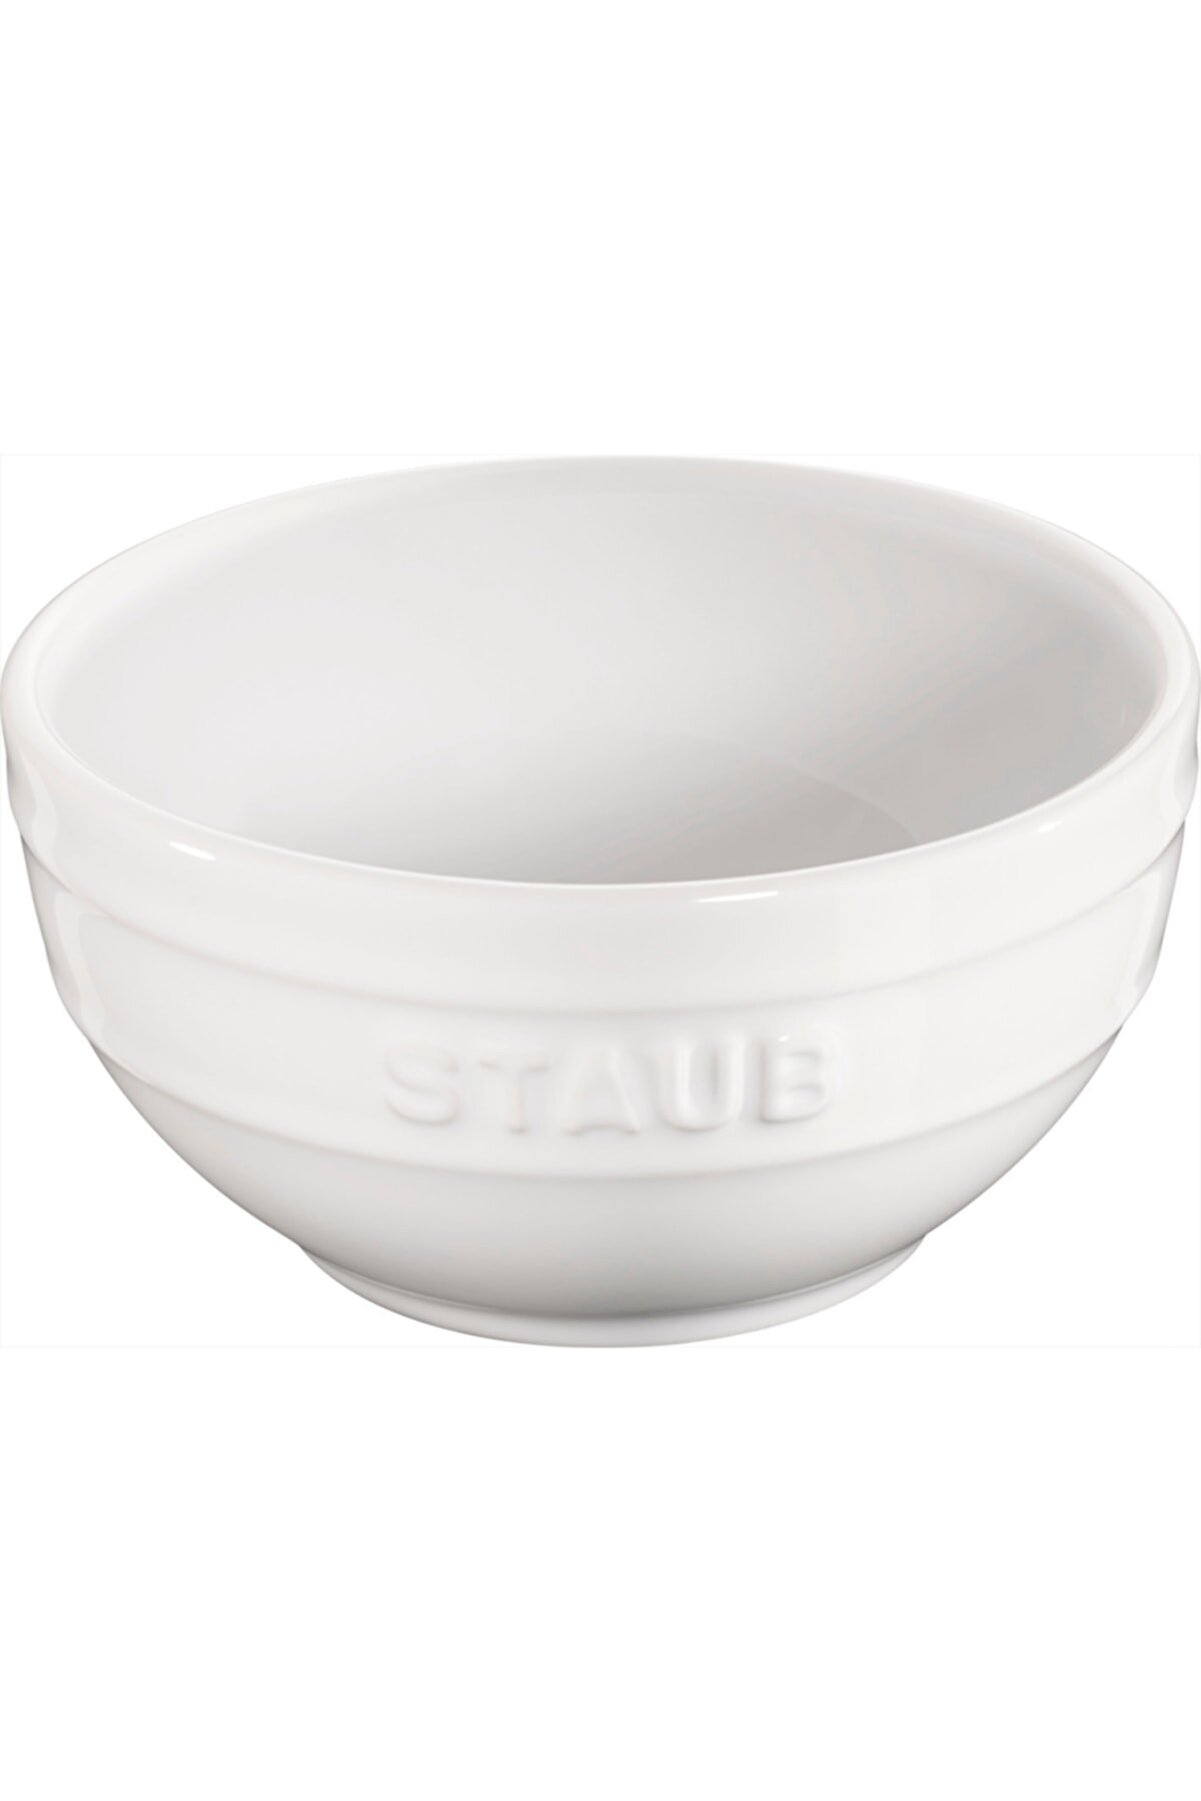 STAUB Ceramique Kase | Seramik | 17 Cm